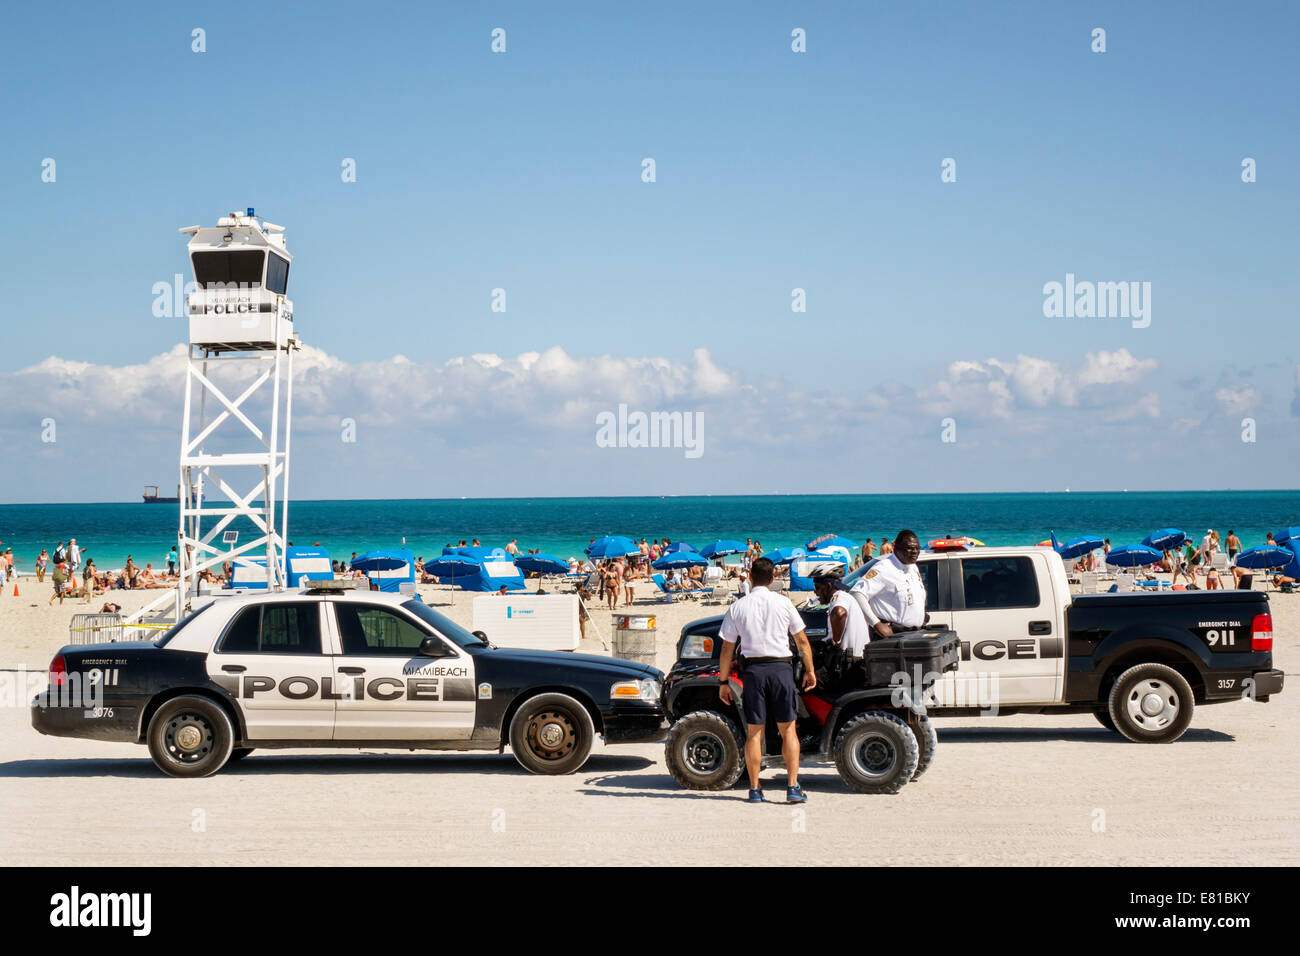 Miami Beach Florida,Océan Atlantique,police,département,policiers,hommes noirs,voiture d'escouade,camion,portable,tour de surveillance,FL140305081 Banque D'Images